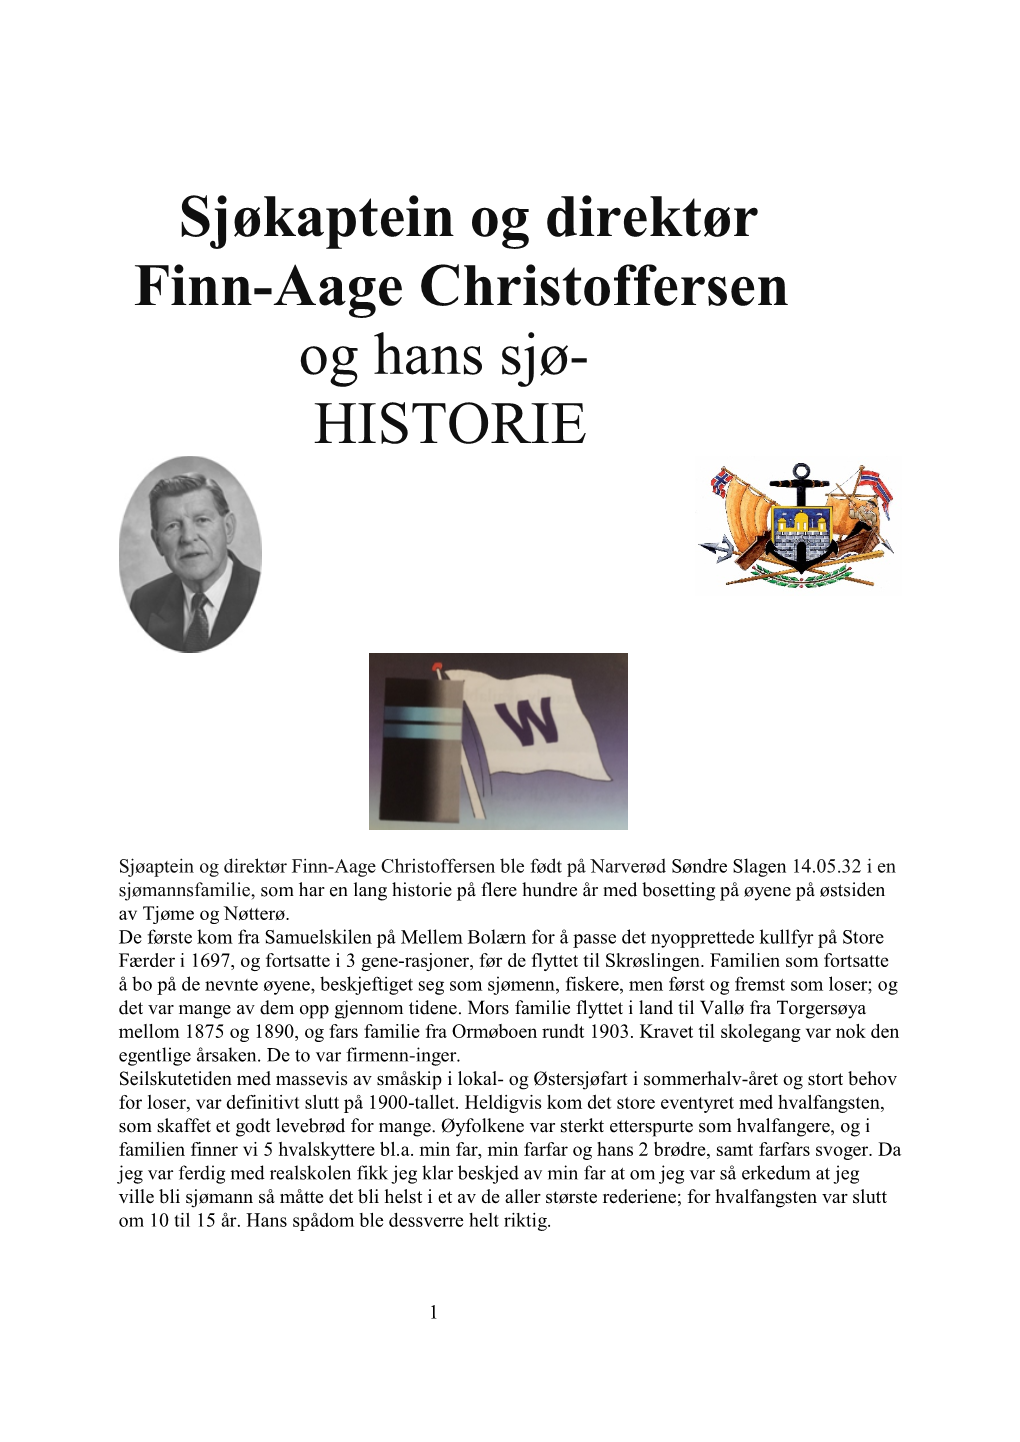 Sjøkaptein Og Direktør Finn-Aage Christoffersen Og Hans Sjø- HISTORIE